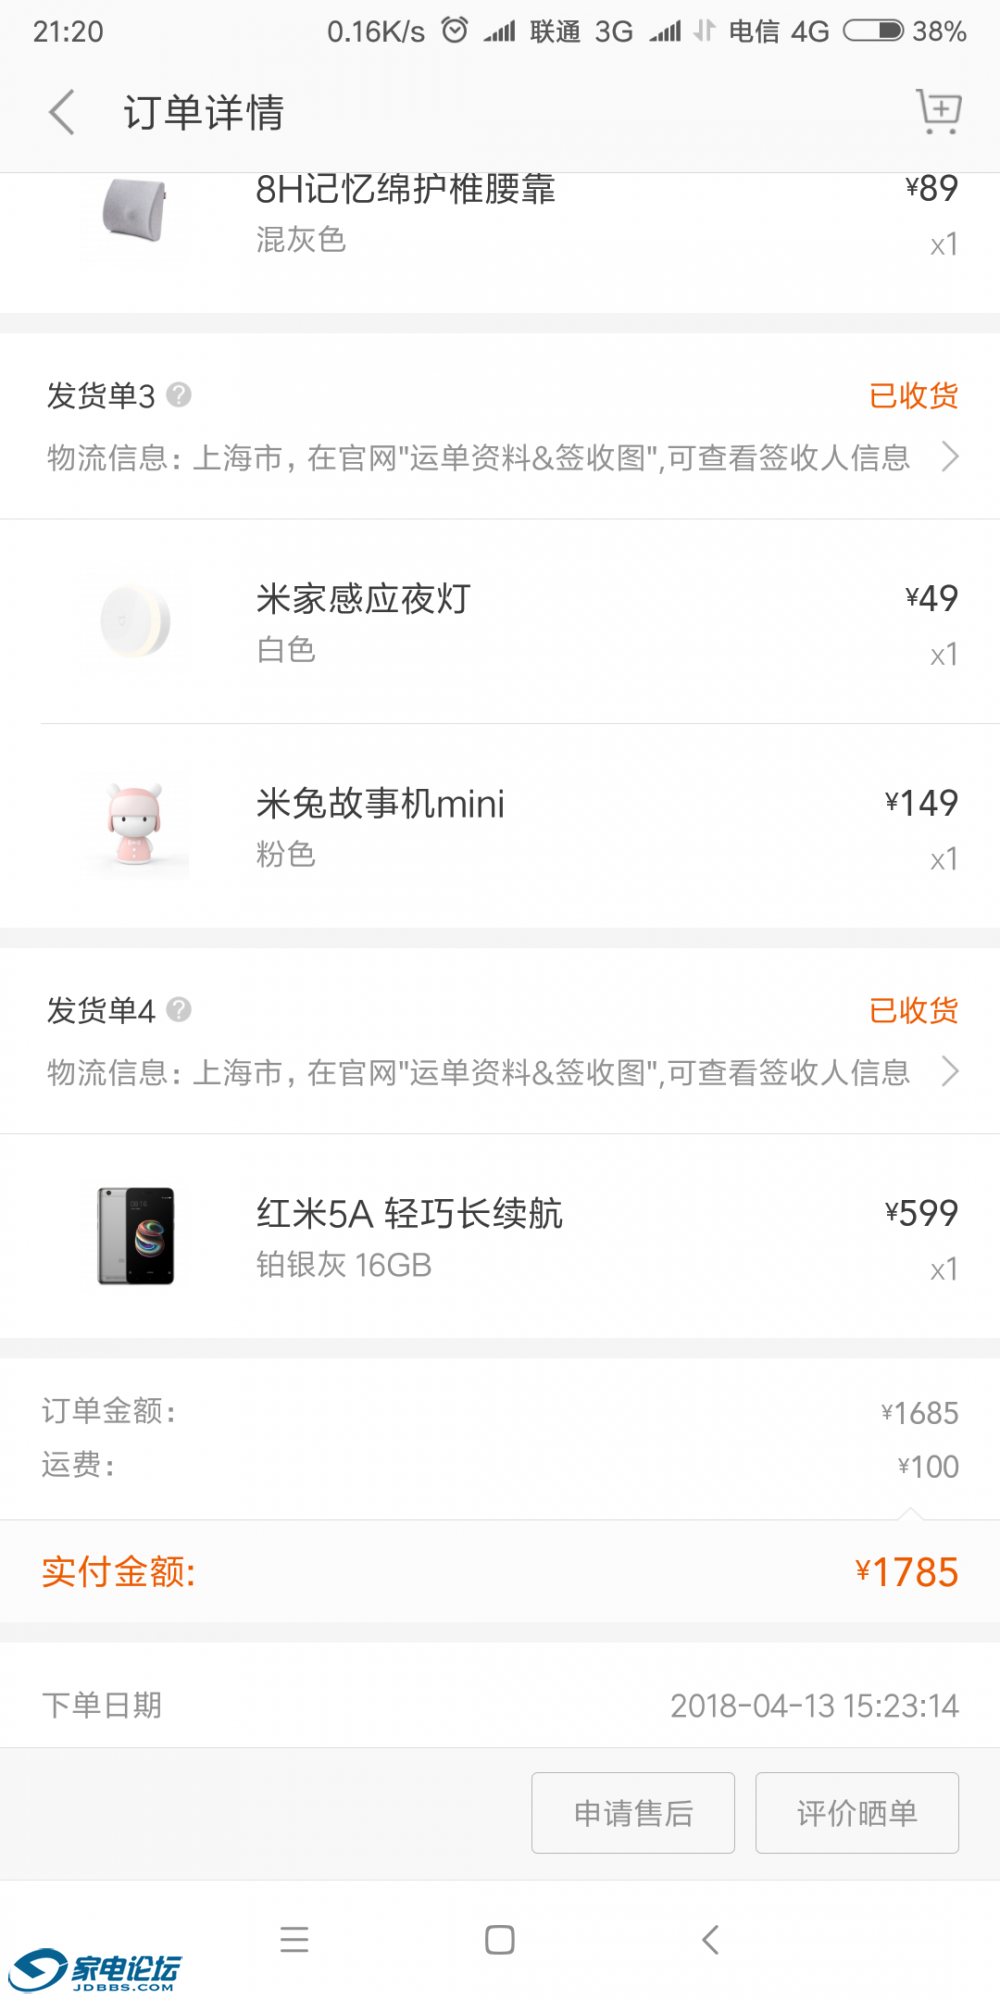 Screenshot_2018-06-17-21-20-46-016_com.xiaomi.shop.png